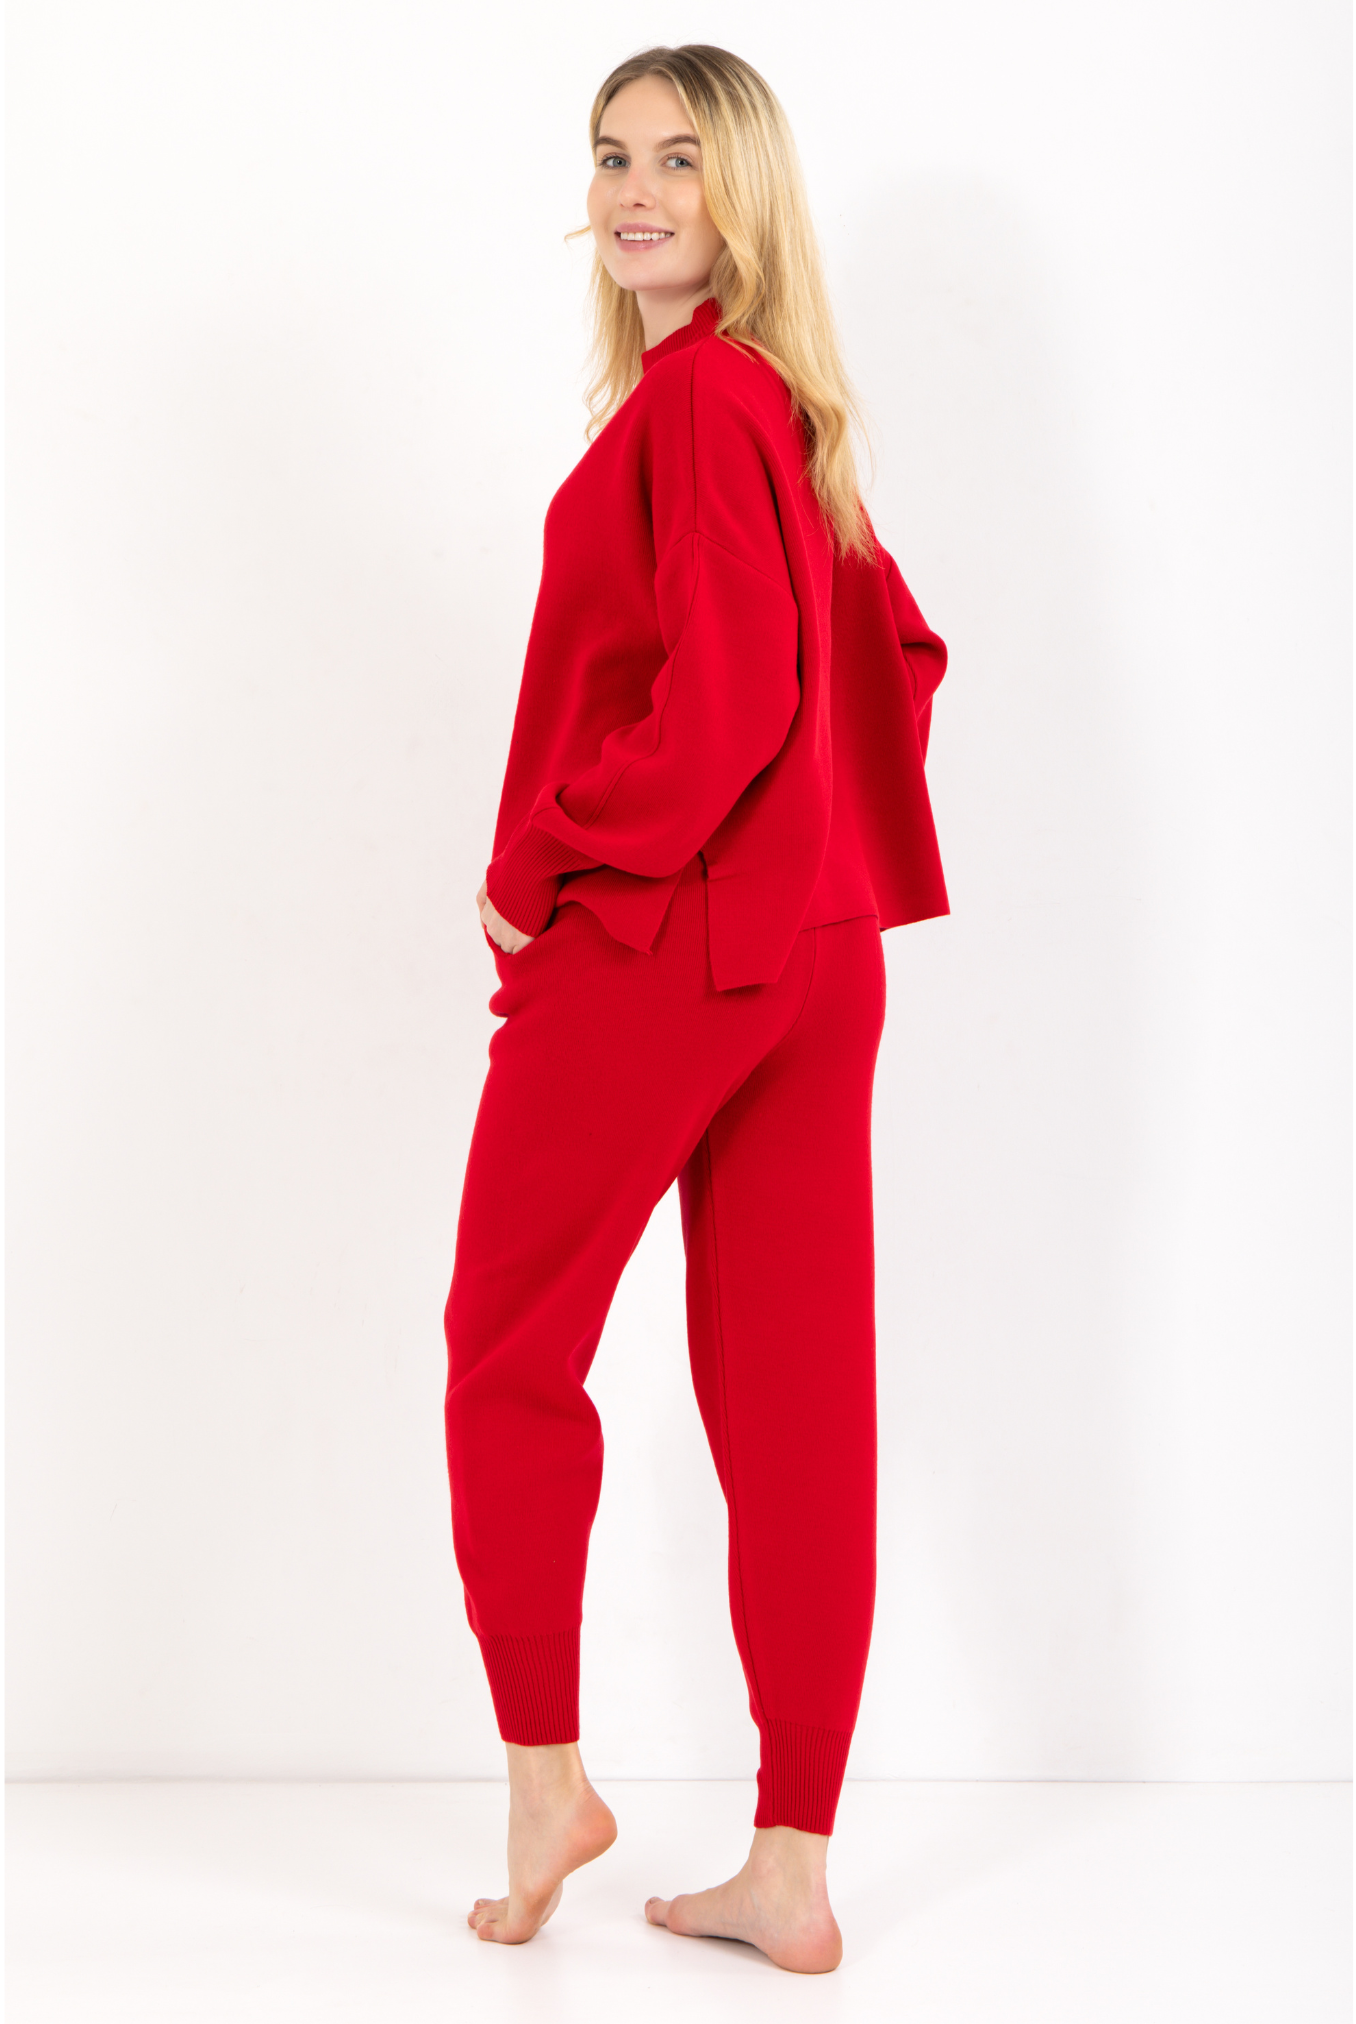 Loungewear Damen Rot in verschiedenen Farben, bequem hohes Tragekomfort, bequem 